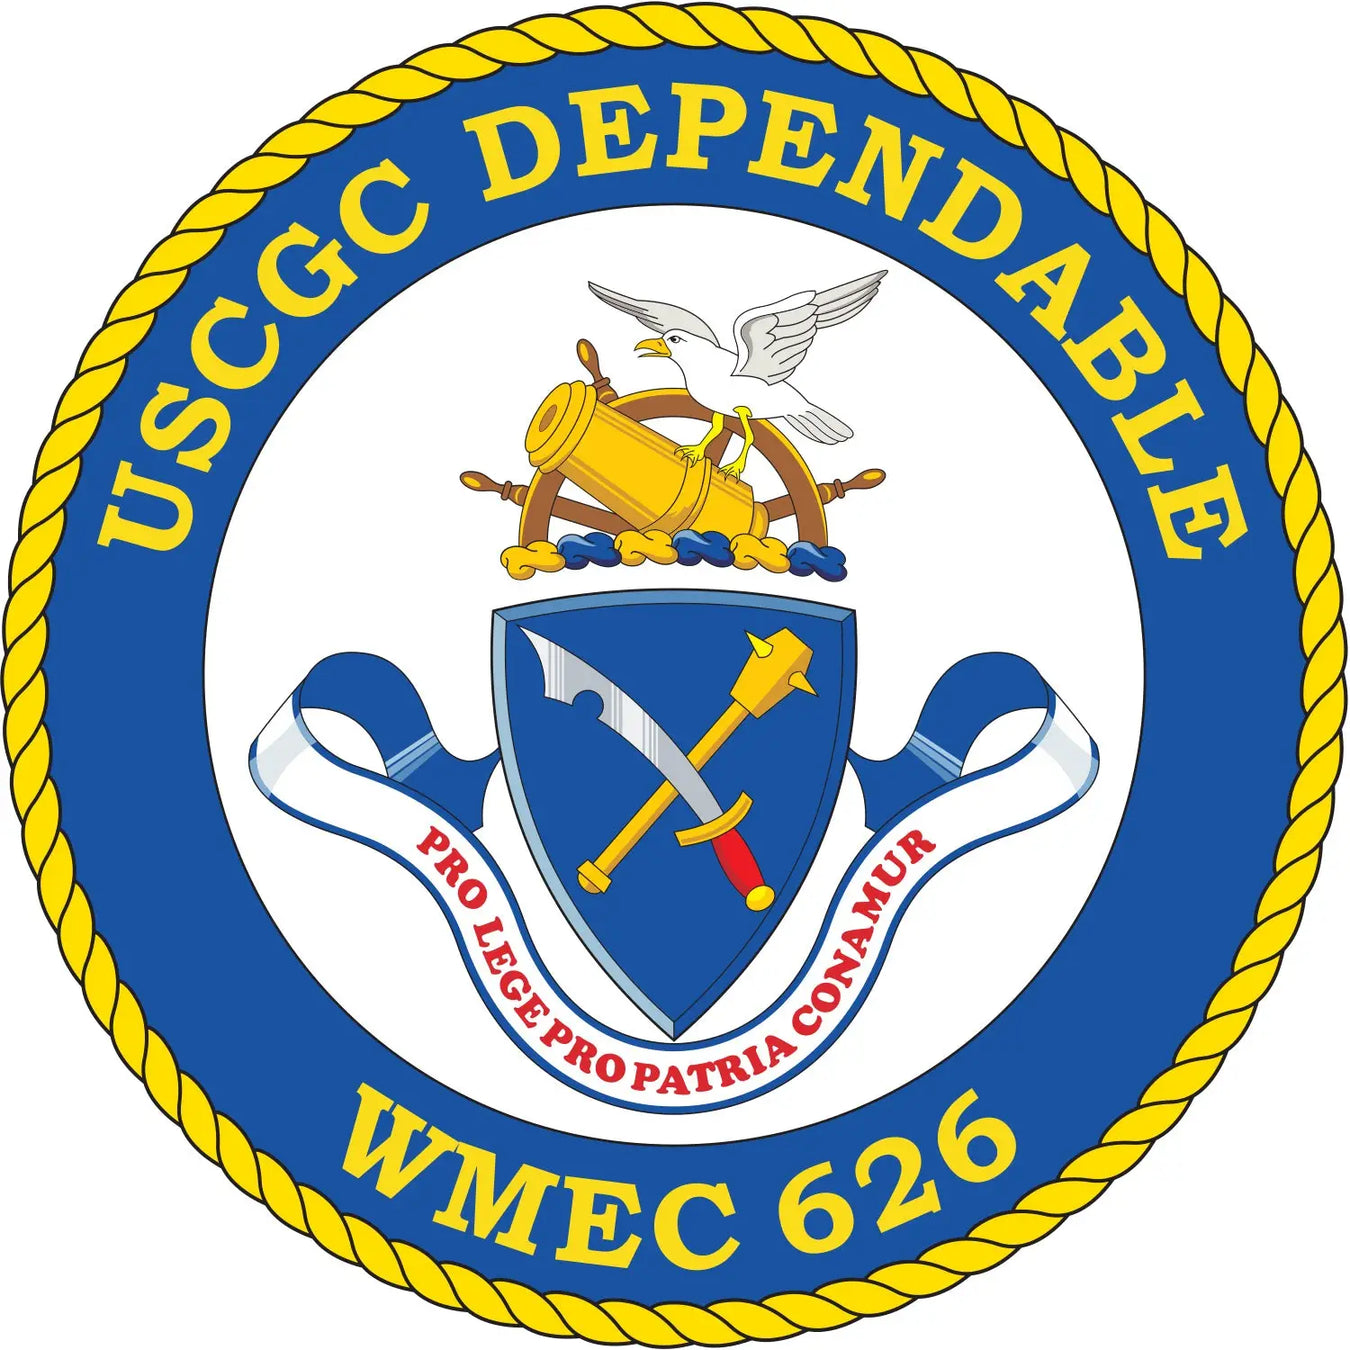 USCGC Dependable (WMEC-626)